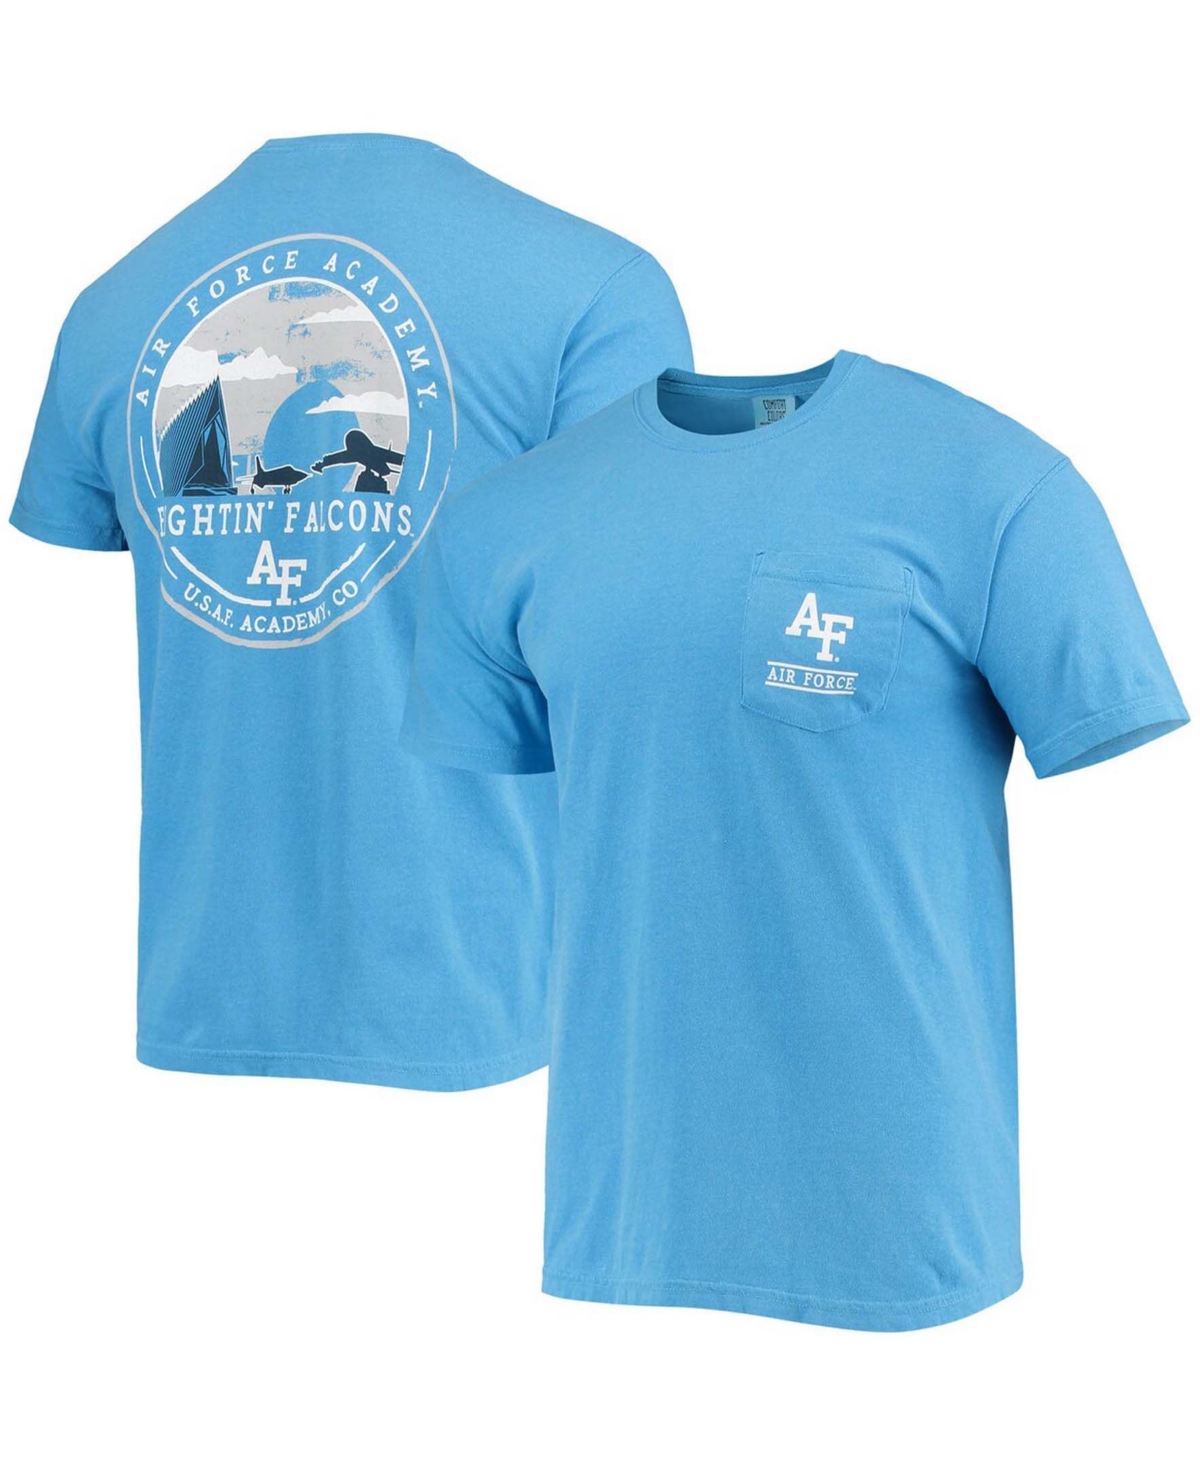 Men's Royal Air Force Falcons Circle Campus Scene T-shirt - Royal